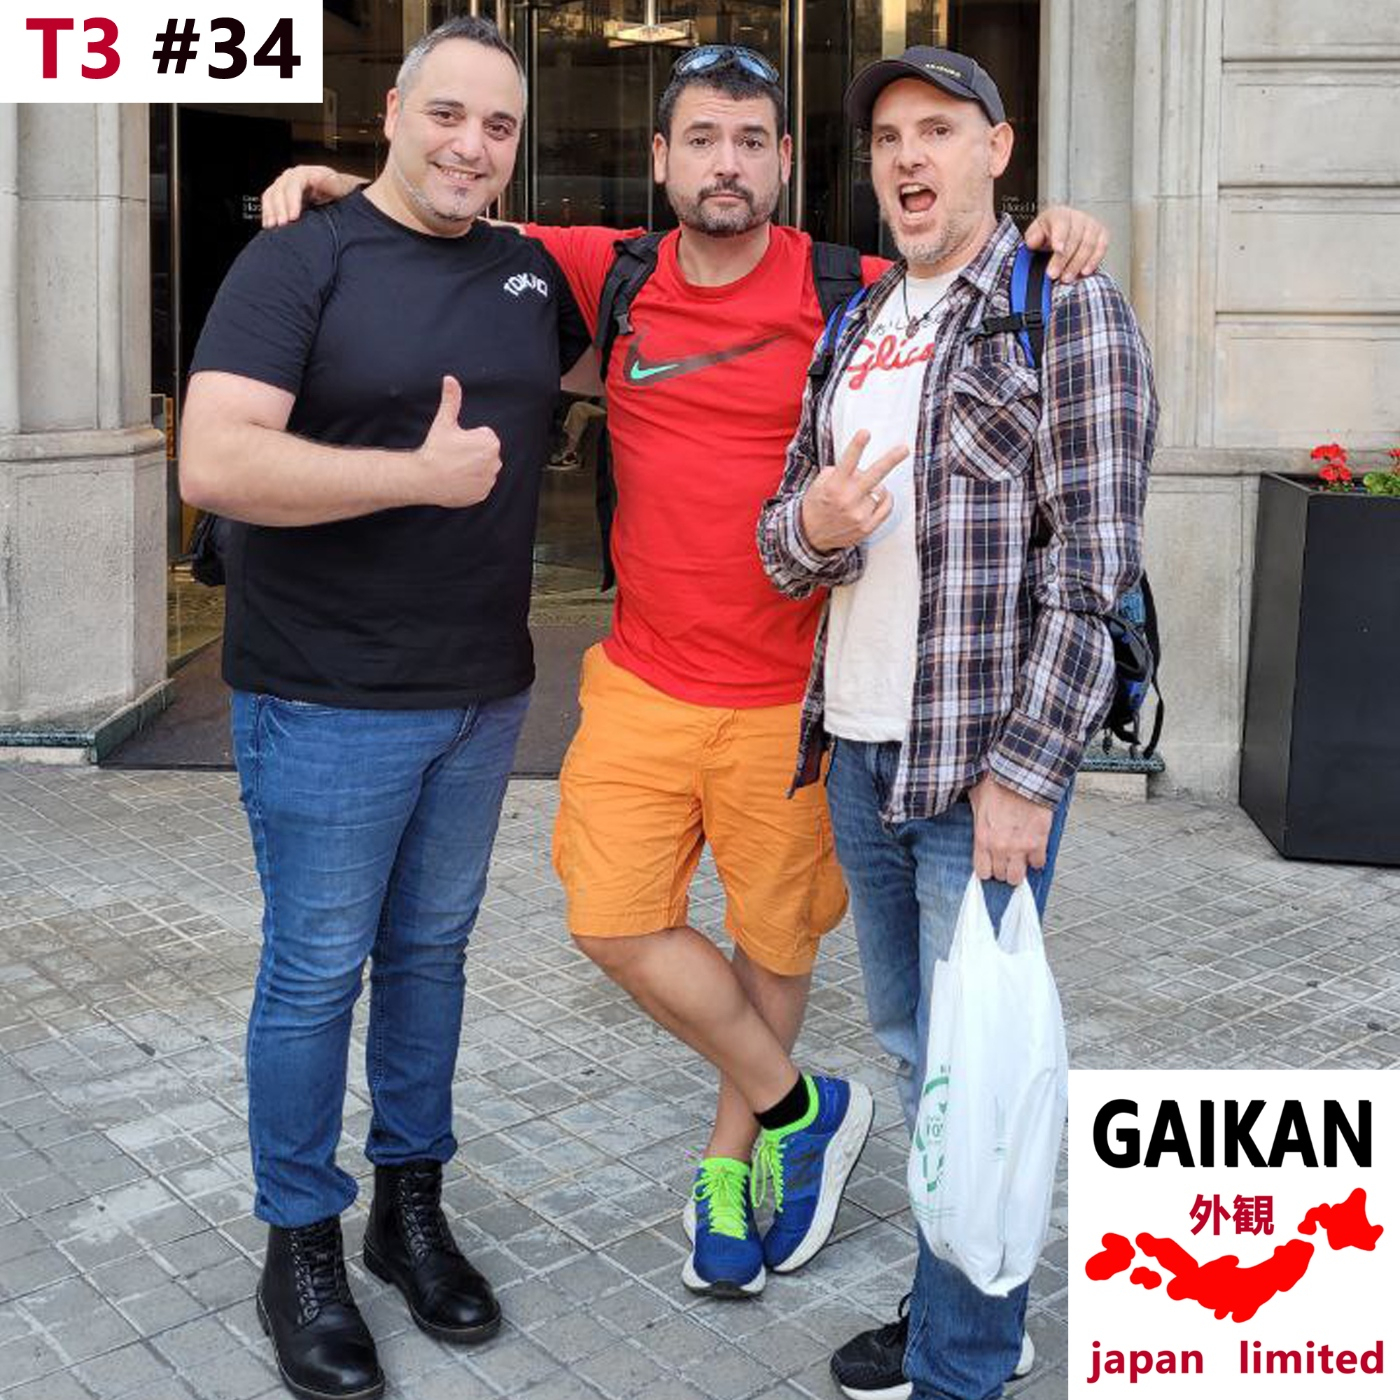 T3 #34 - Llopet, Luis Miguel y Alfonso ”Ryo” en el Akihabara de Barcelona (Triángulo friki)